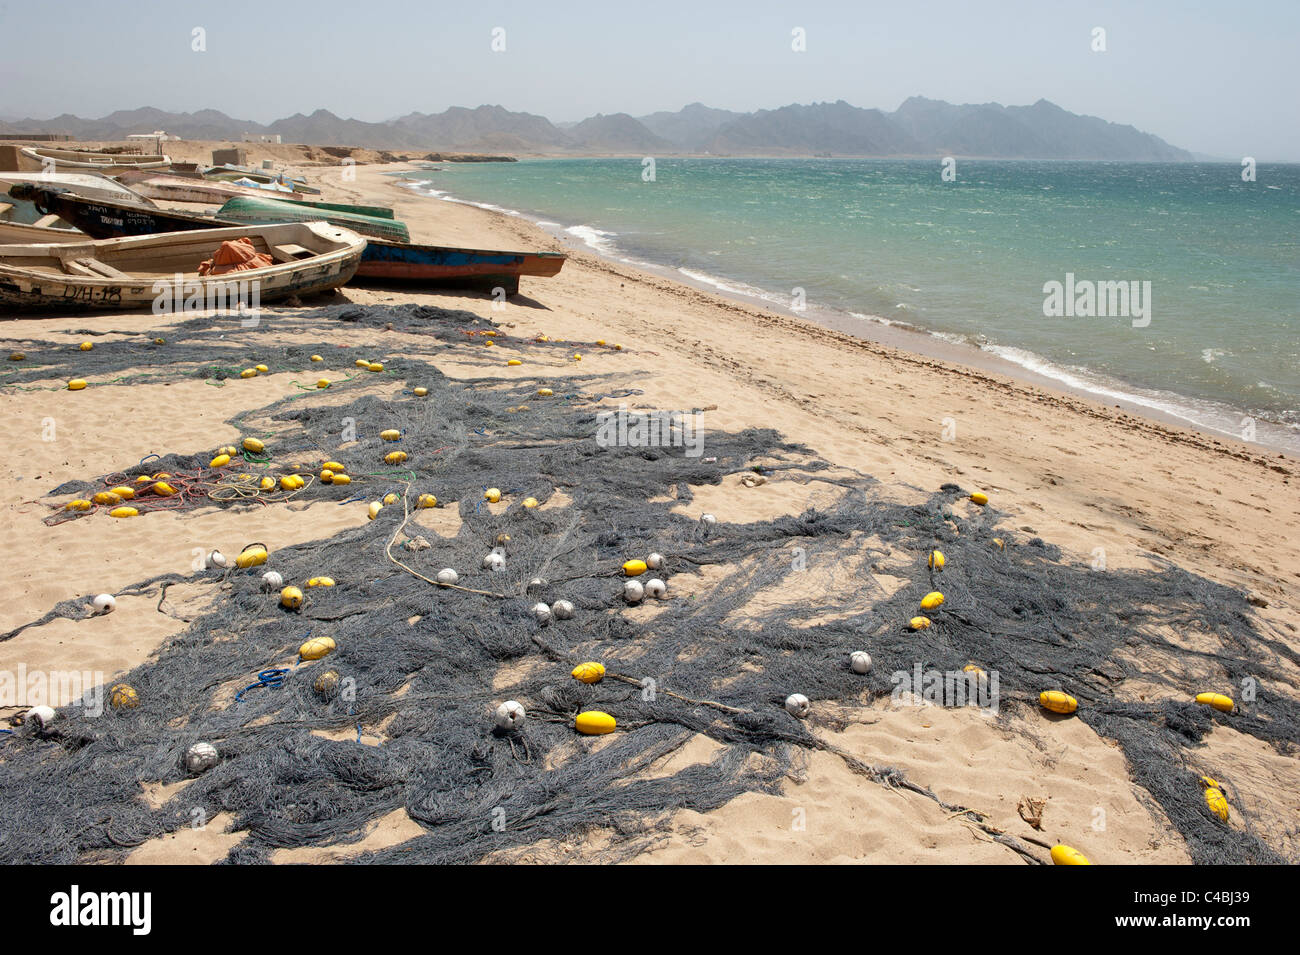 Golfo di aden immagini e fotografie stock ad alta risoluzione - Alamy